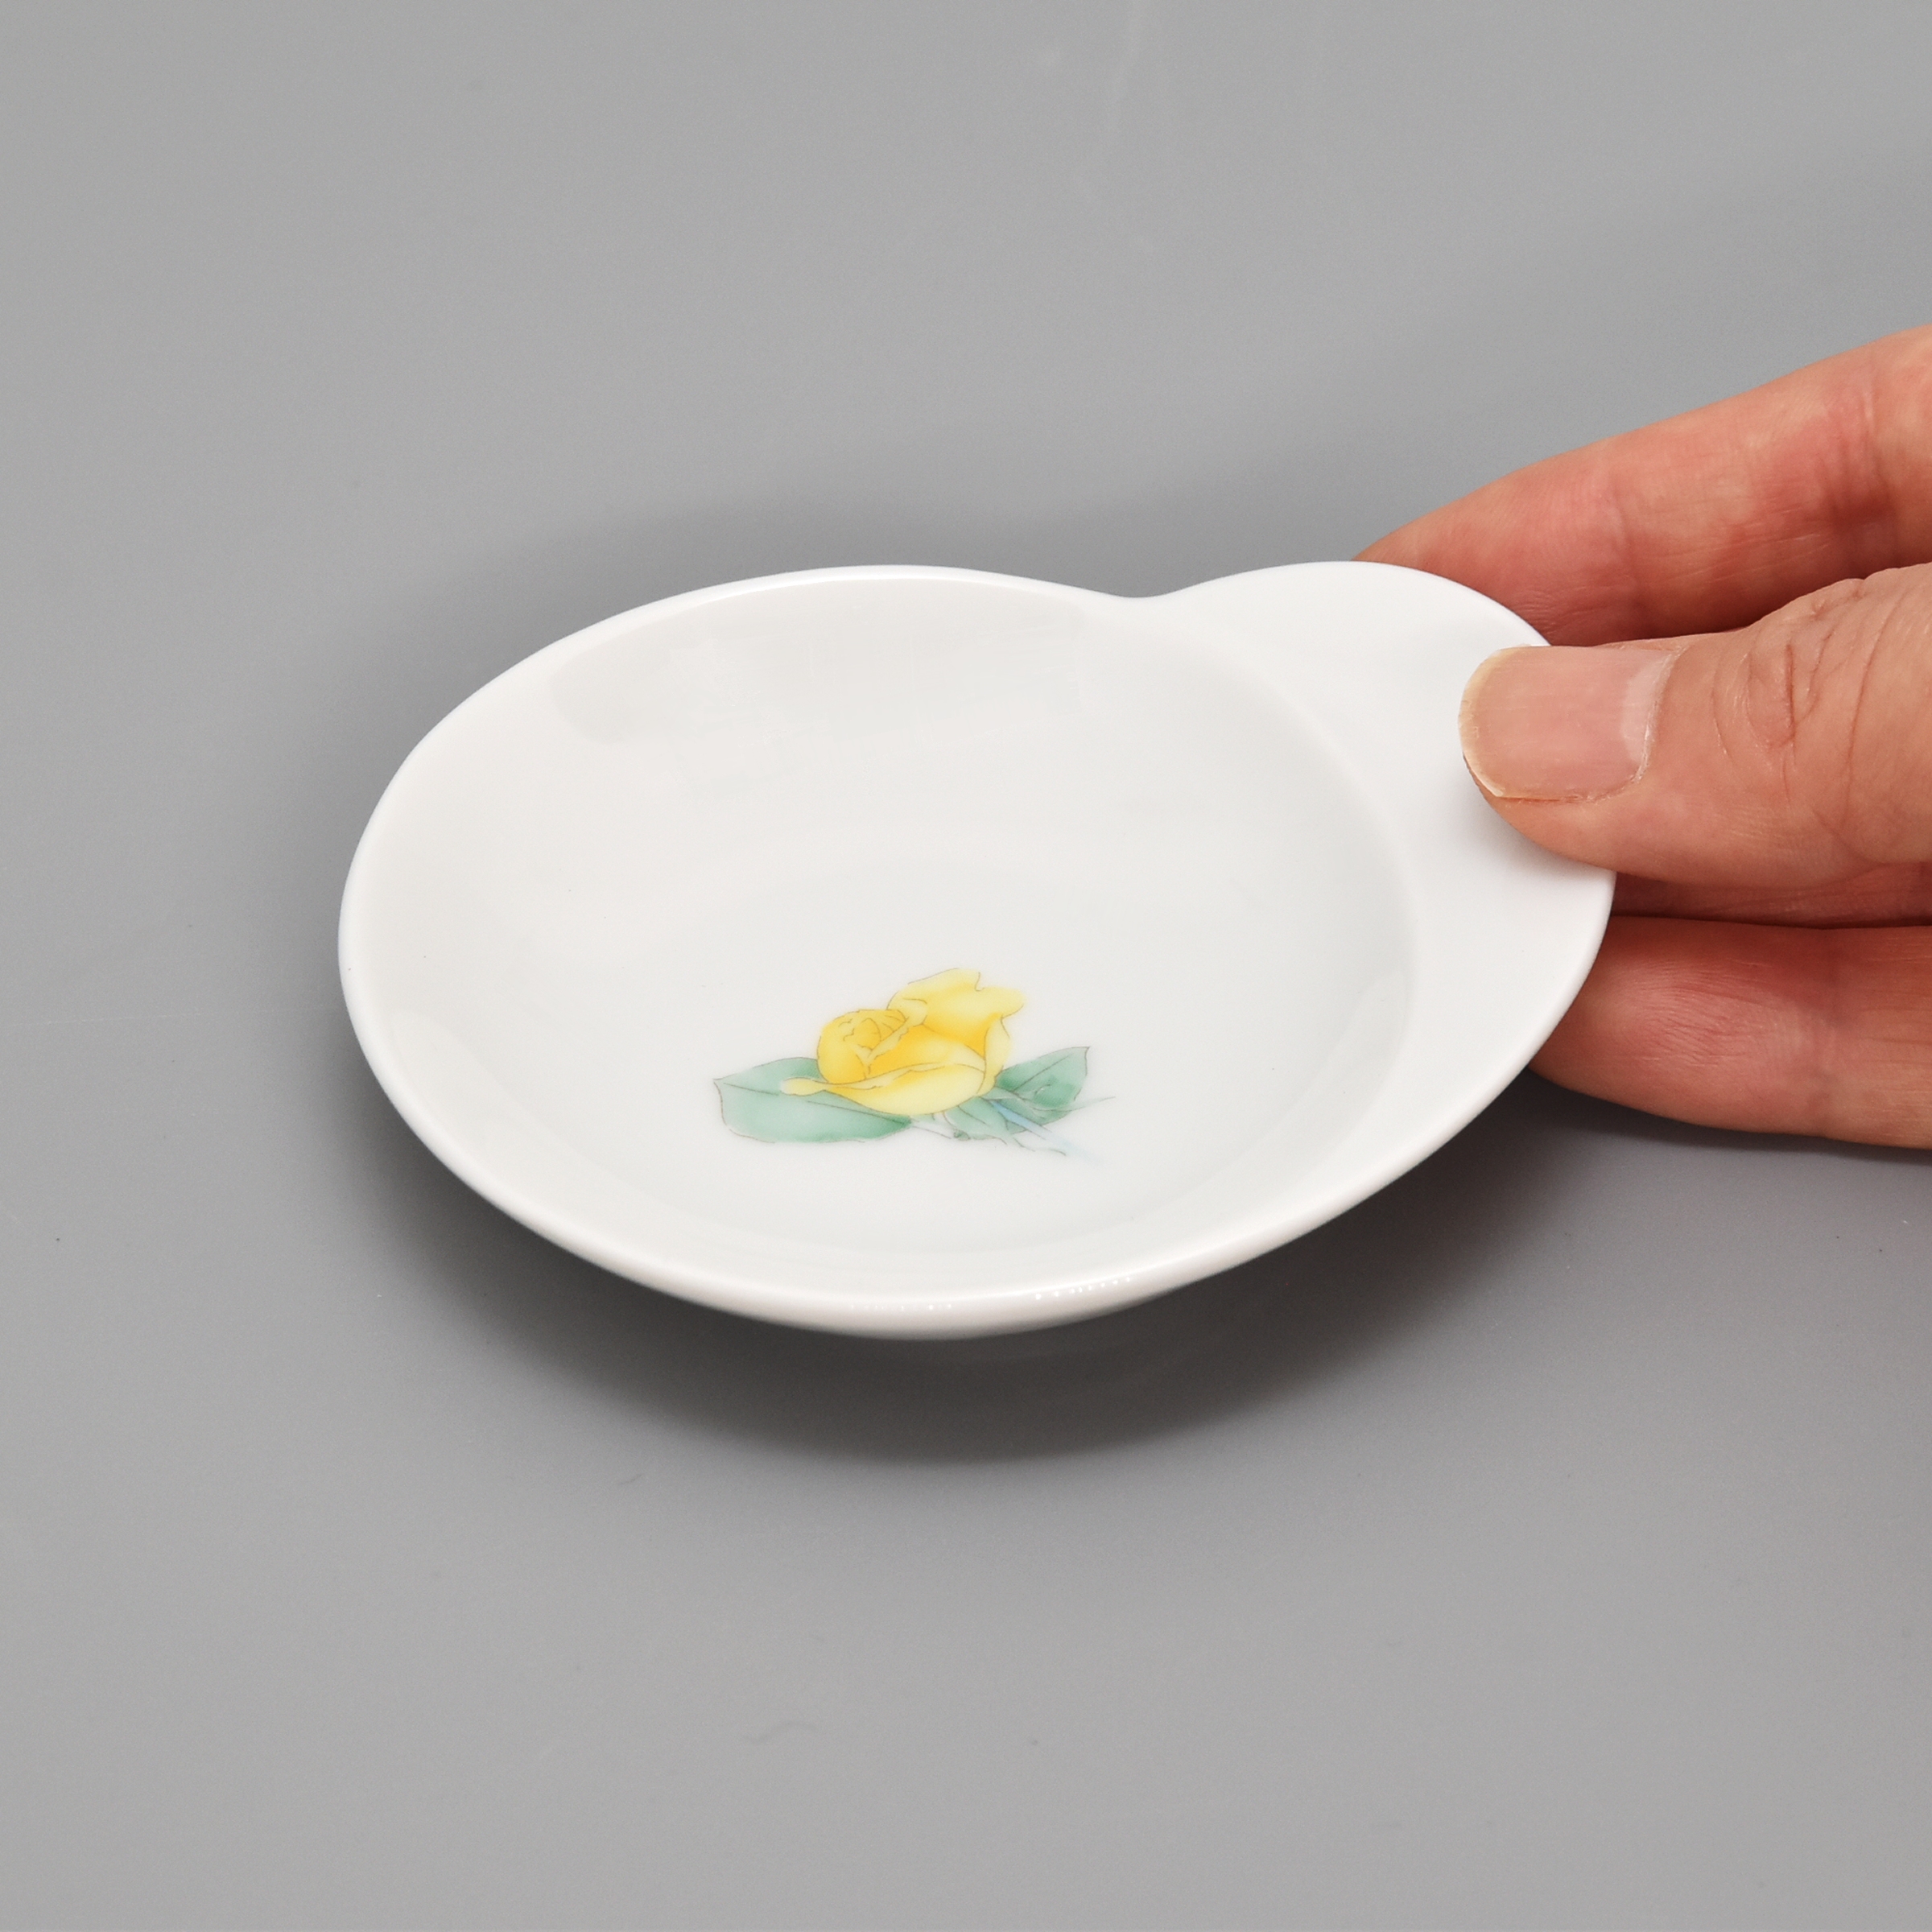 お皿には約1.5cm（一番広いところ）の持ち手があります。持ち手以外の部分は　長径8.5cm　短径7.5cm位です。片手に乗るくらいのサイズです。
